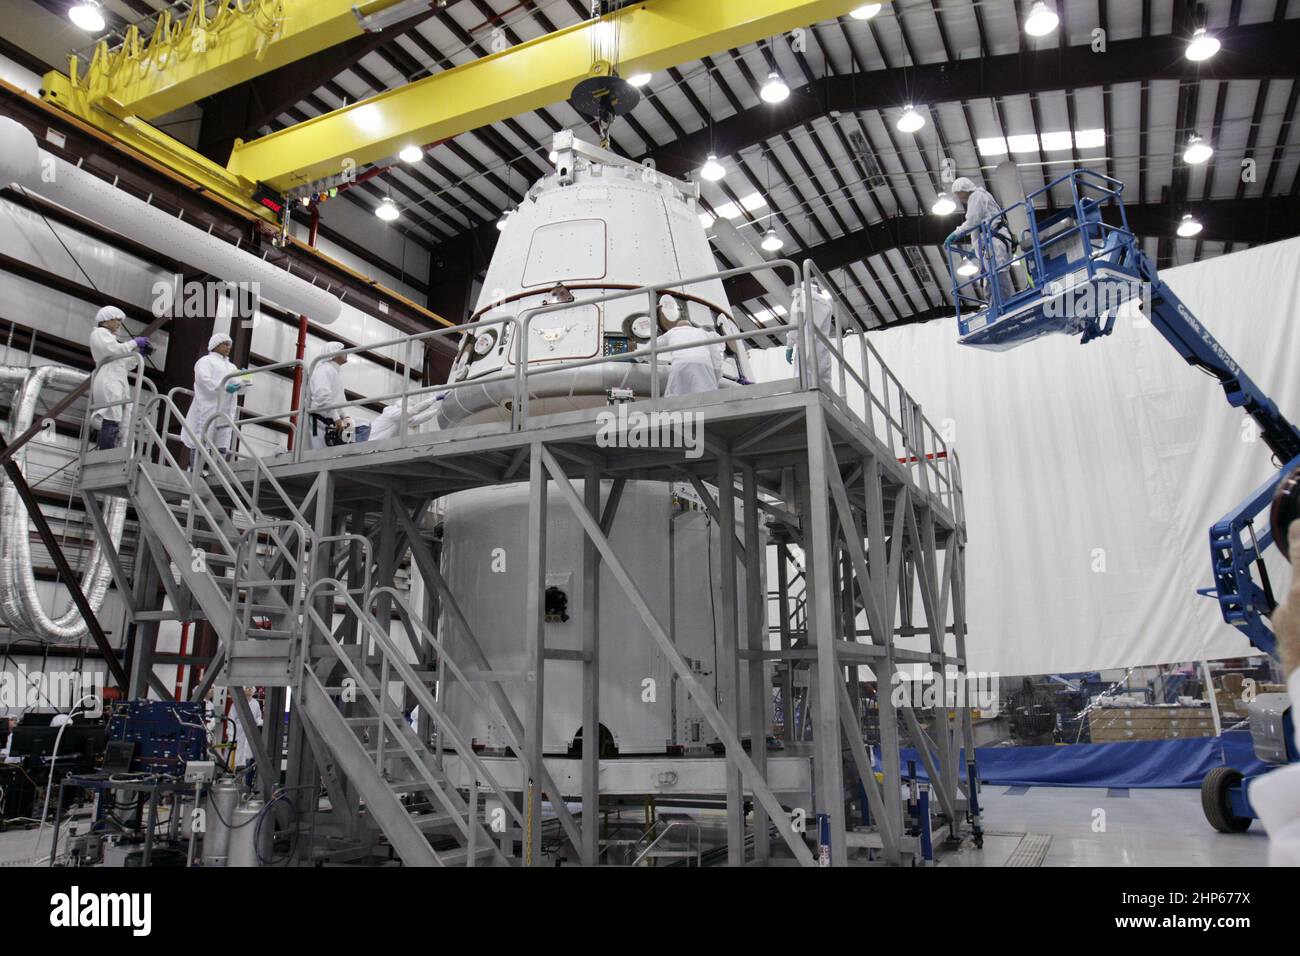 Die Dragon-Kapsel Space Exploration Technologies Corp. (SpaceX) befindet sich auf dem Ladering in einem Verarbeitungshangar der Cape Canaveral Air Force Station in Florida, Kalifornien. 2011 Stockfoto